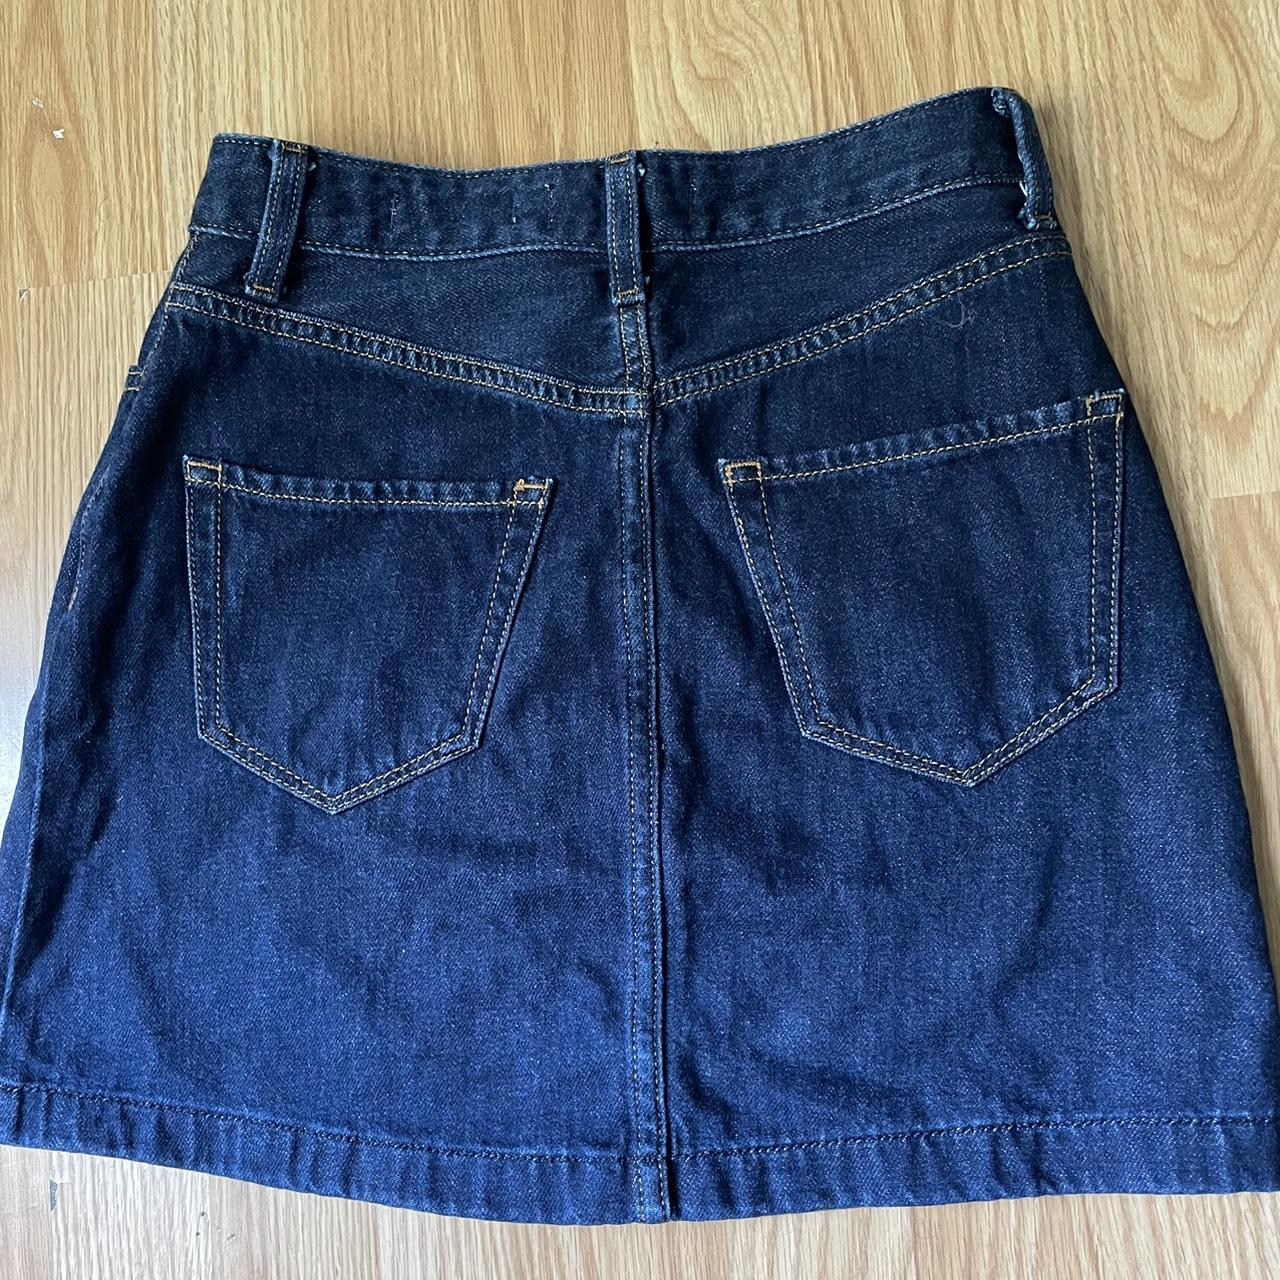 Hollister Co. Women's Navy Skirt | Depop